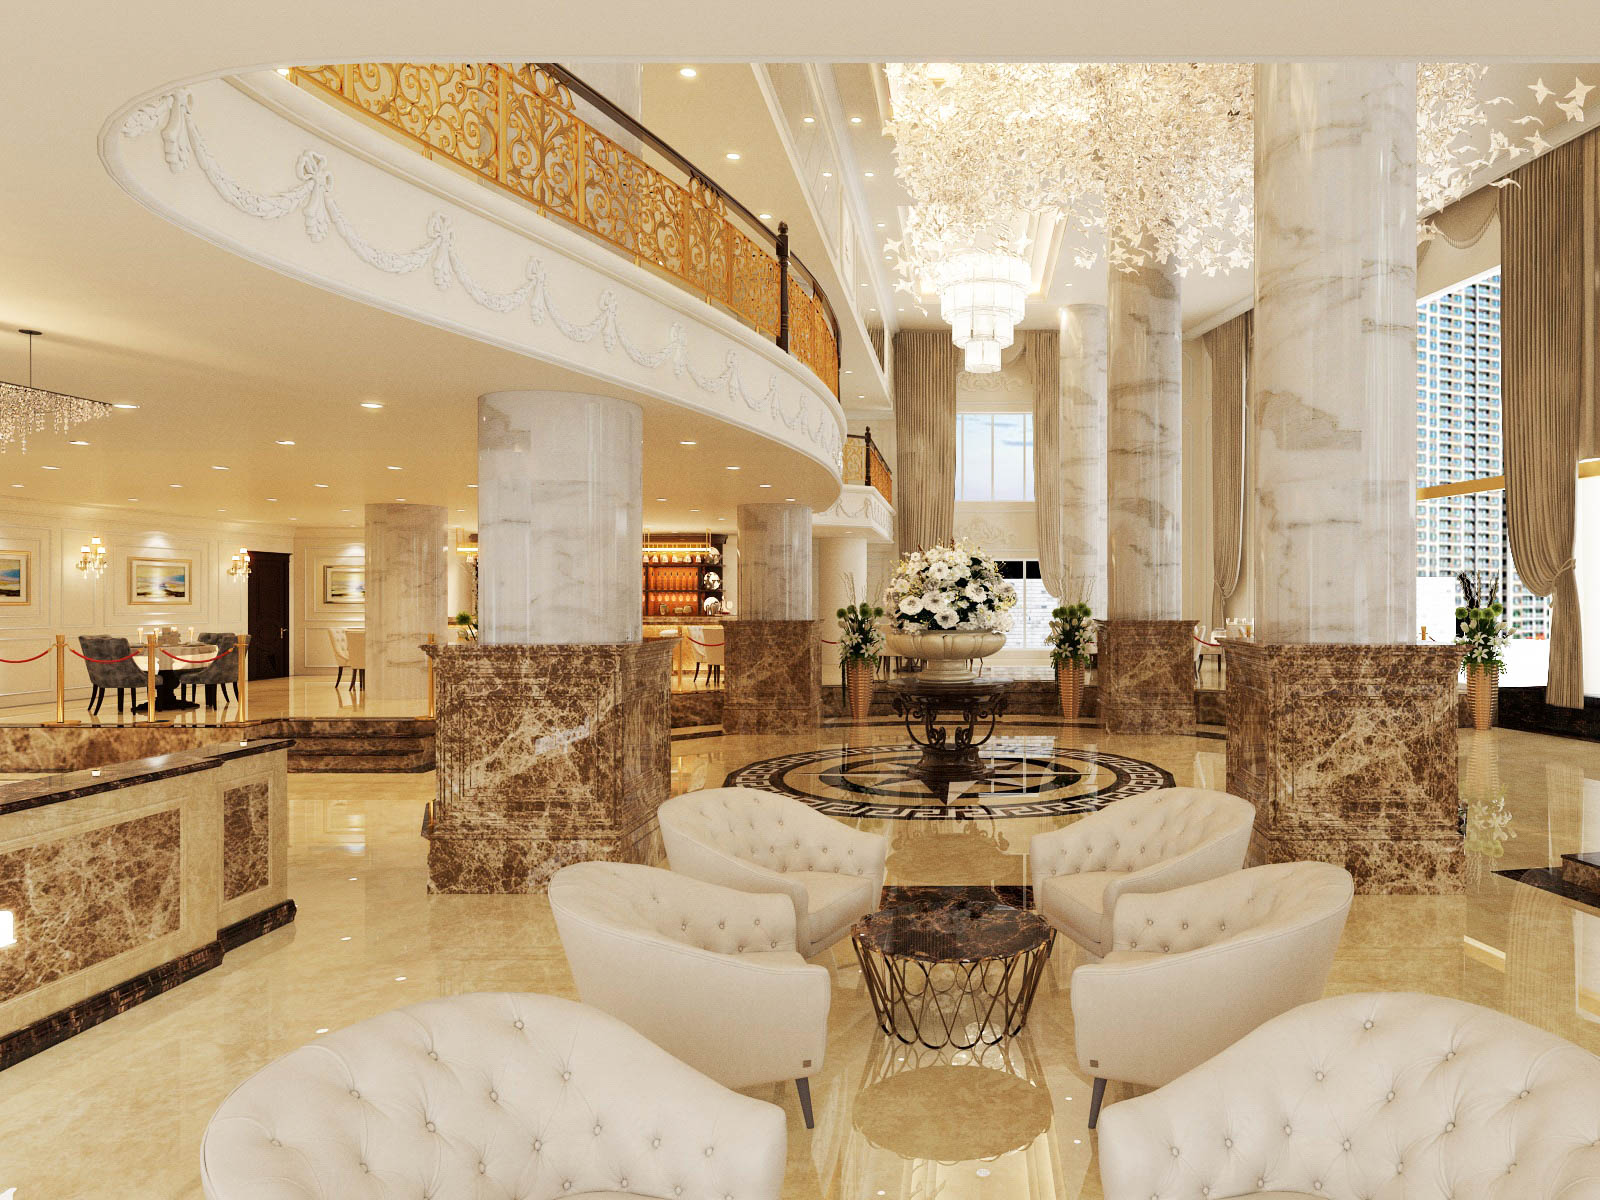 hình ảnh đại sảnh khách sạn đẹp với đá cẩm thạch ốp lát tông màu vàng, trắng, nâu